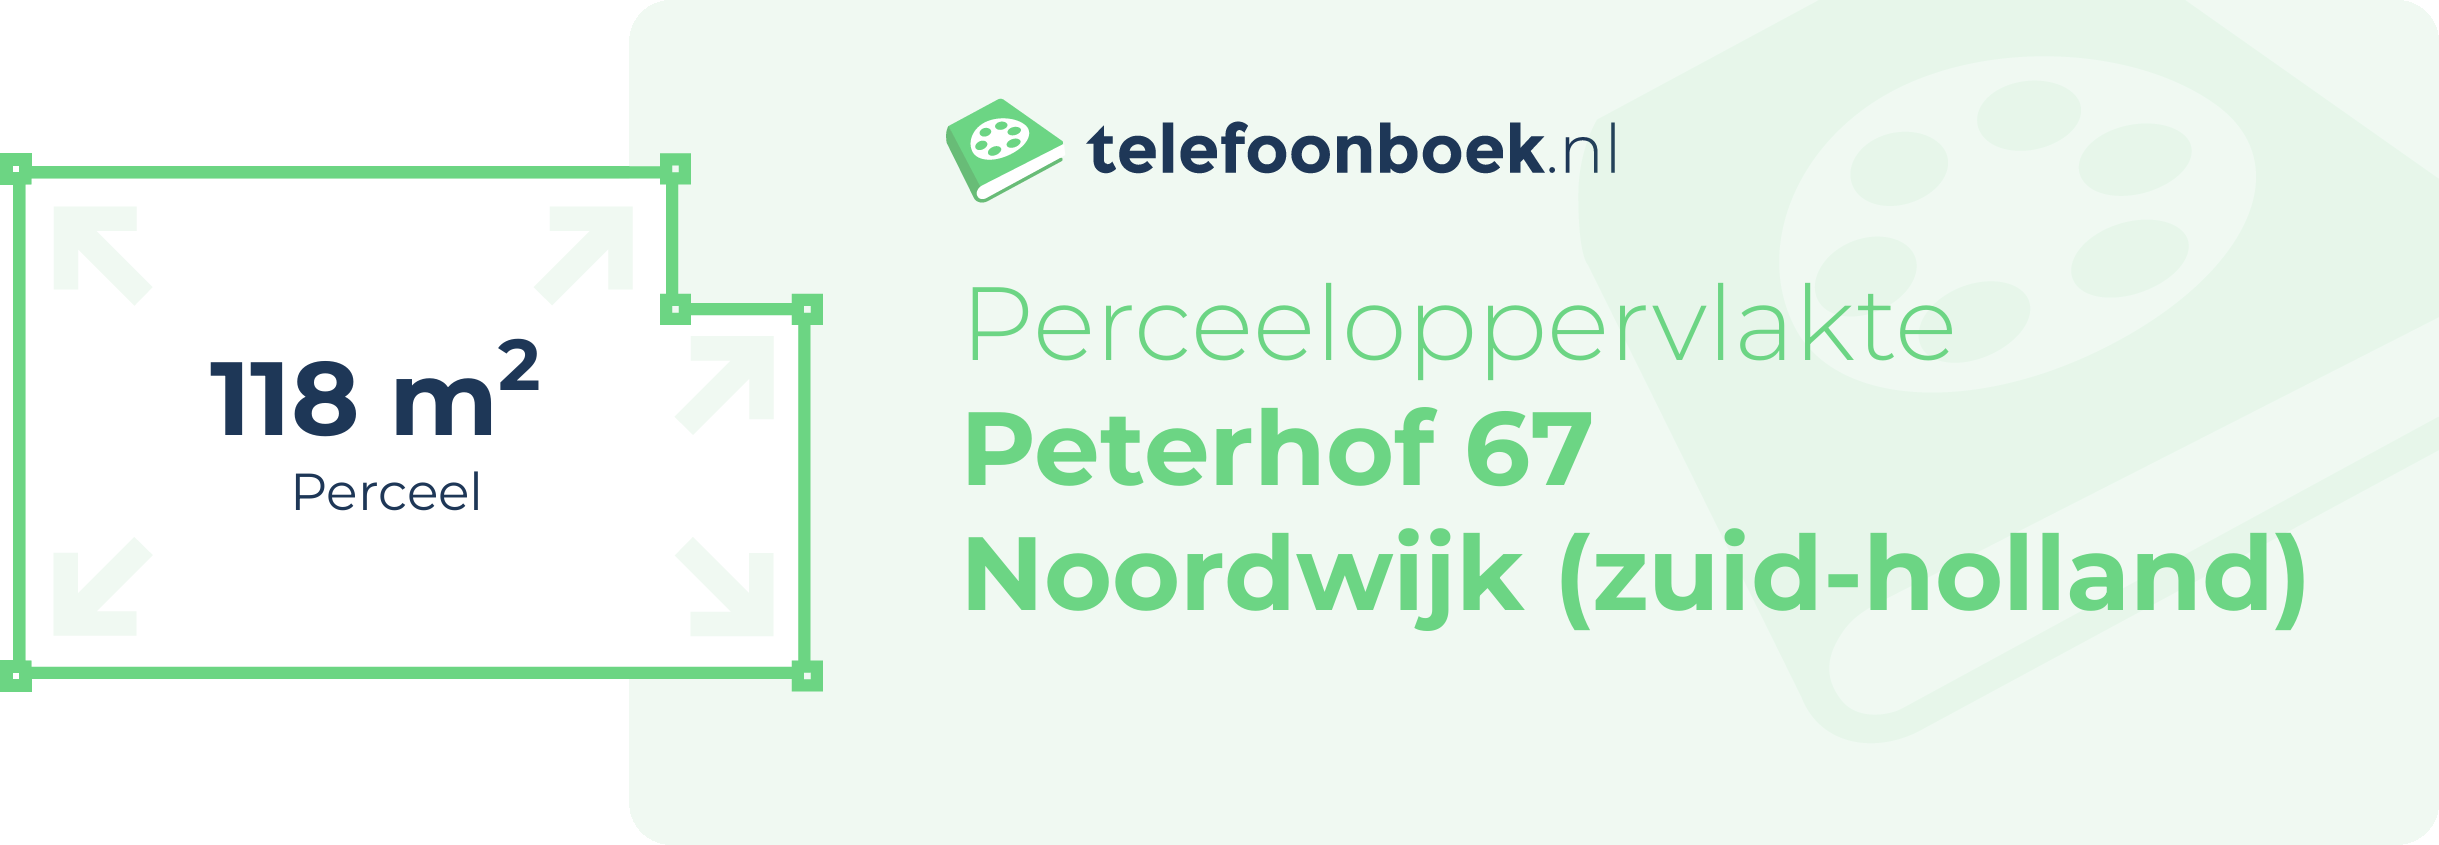 Perceeloppervlakte Peterhof 67 Noordwijk (Zuid-Holland)